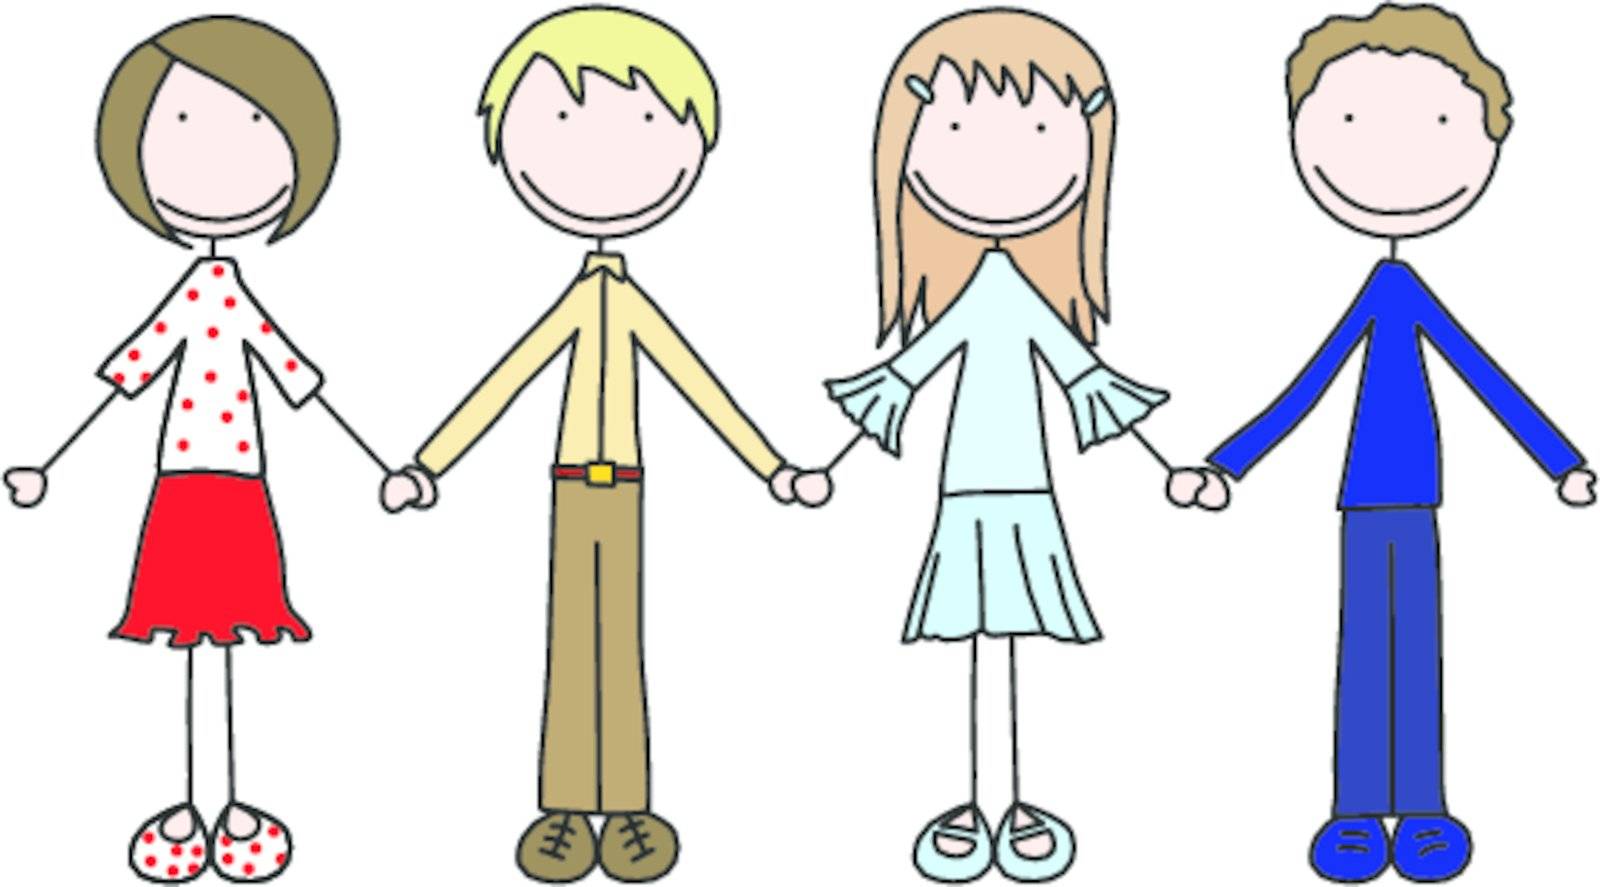 Illustration of four kids holding hands